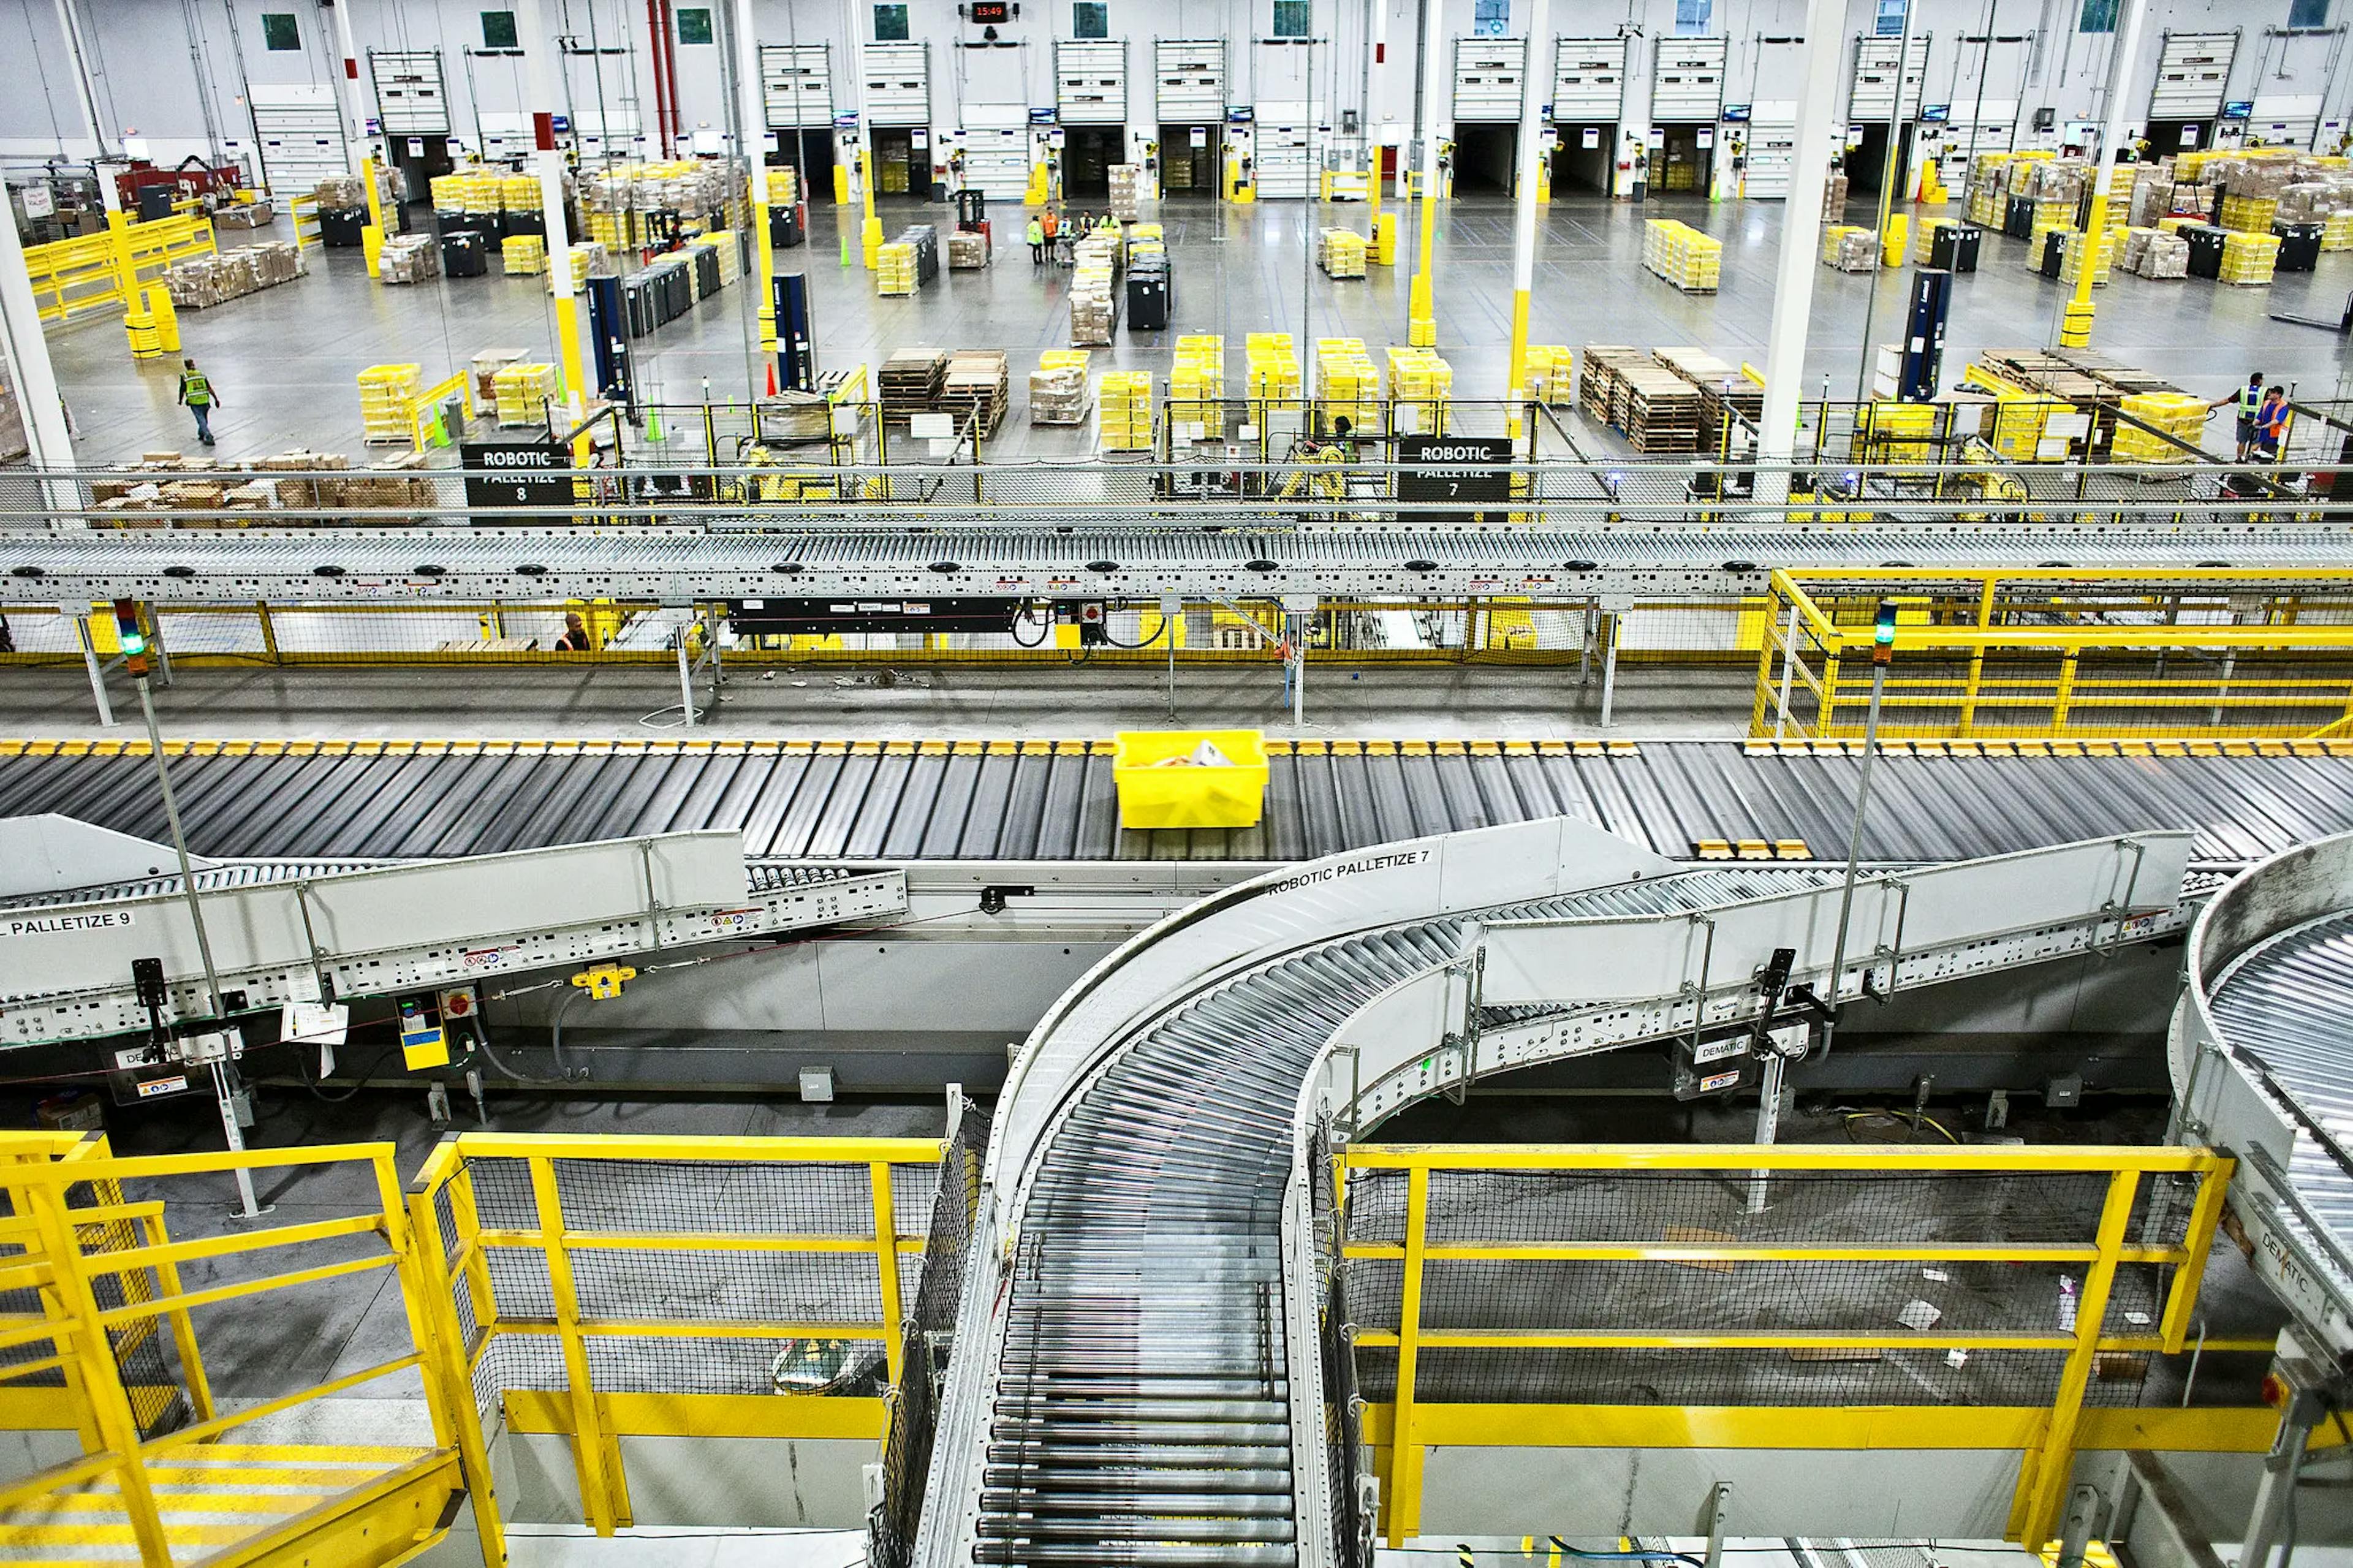 Com a introdução de uma nova era da robótica, a Amazon precisará reestruturar seus armazéns | The New York Times[2]